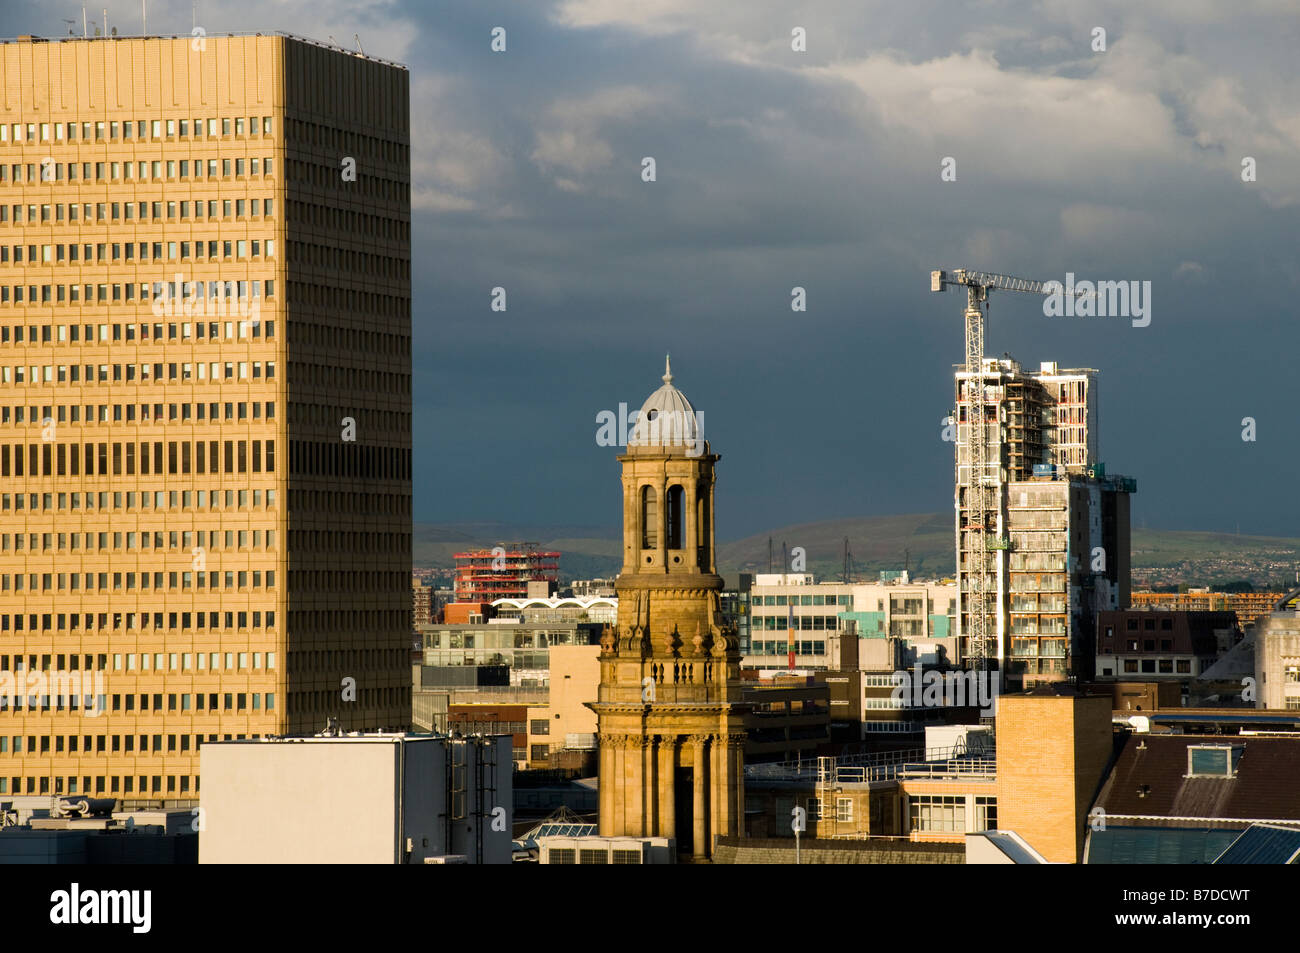 La torre del centro commerciale Arndale e un edificio in costruzione nel centro della città, Manchester, Inghilterra, Regno Unito Foto Stock